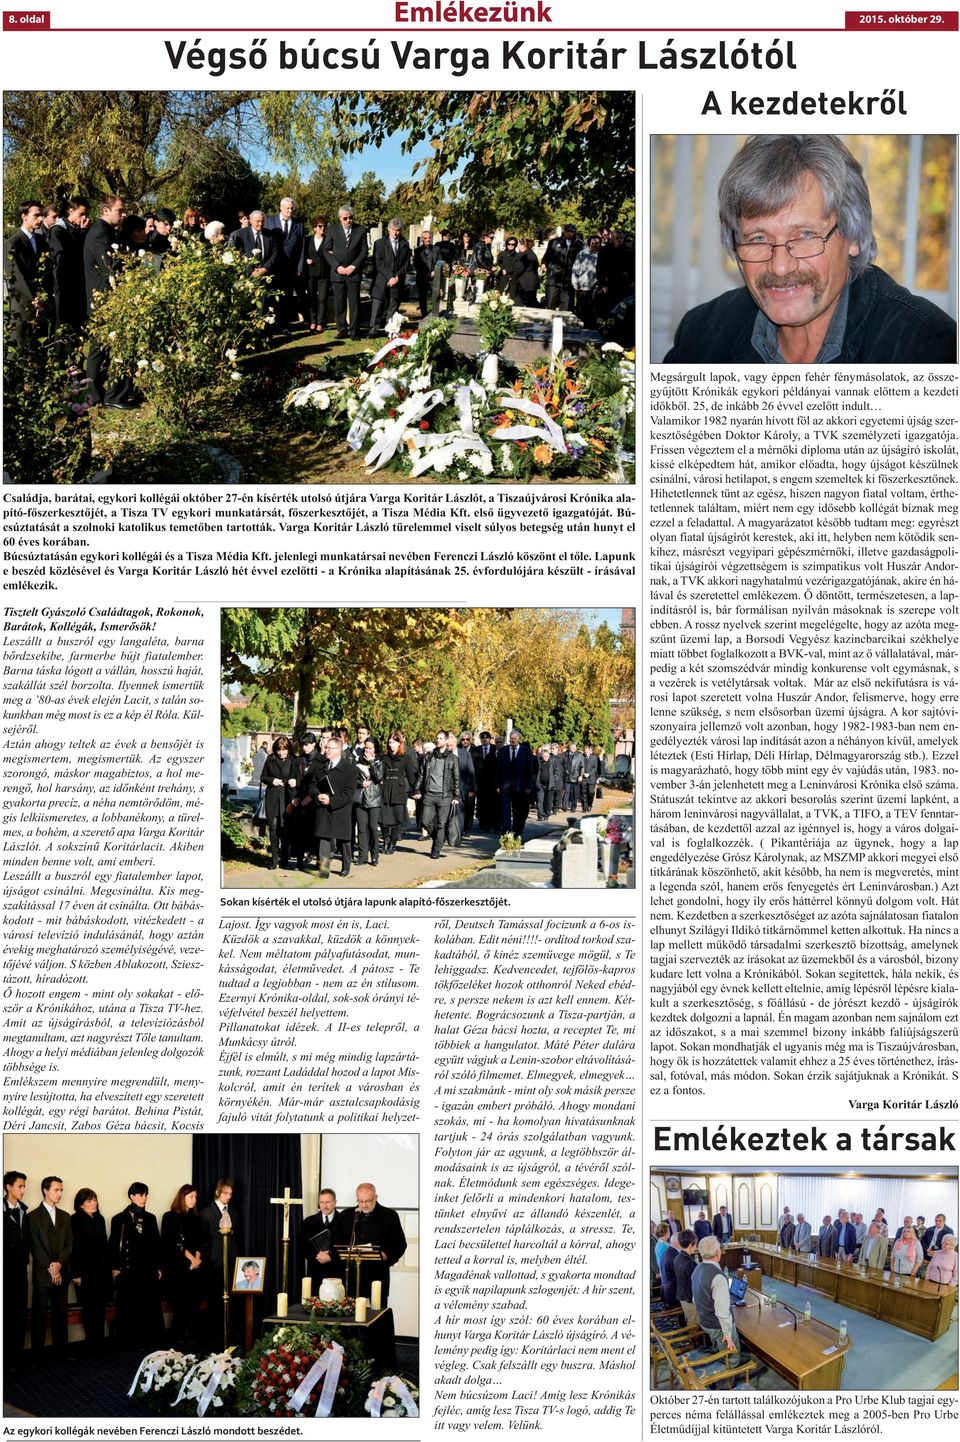 Tisza TV egykori munkatársát, főszerkesztőjét, a Tisza Média Kft. első ügyvezető igazgatóját. Búcsúztatását a szolnoki katolikus temetőben tartották.